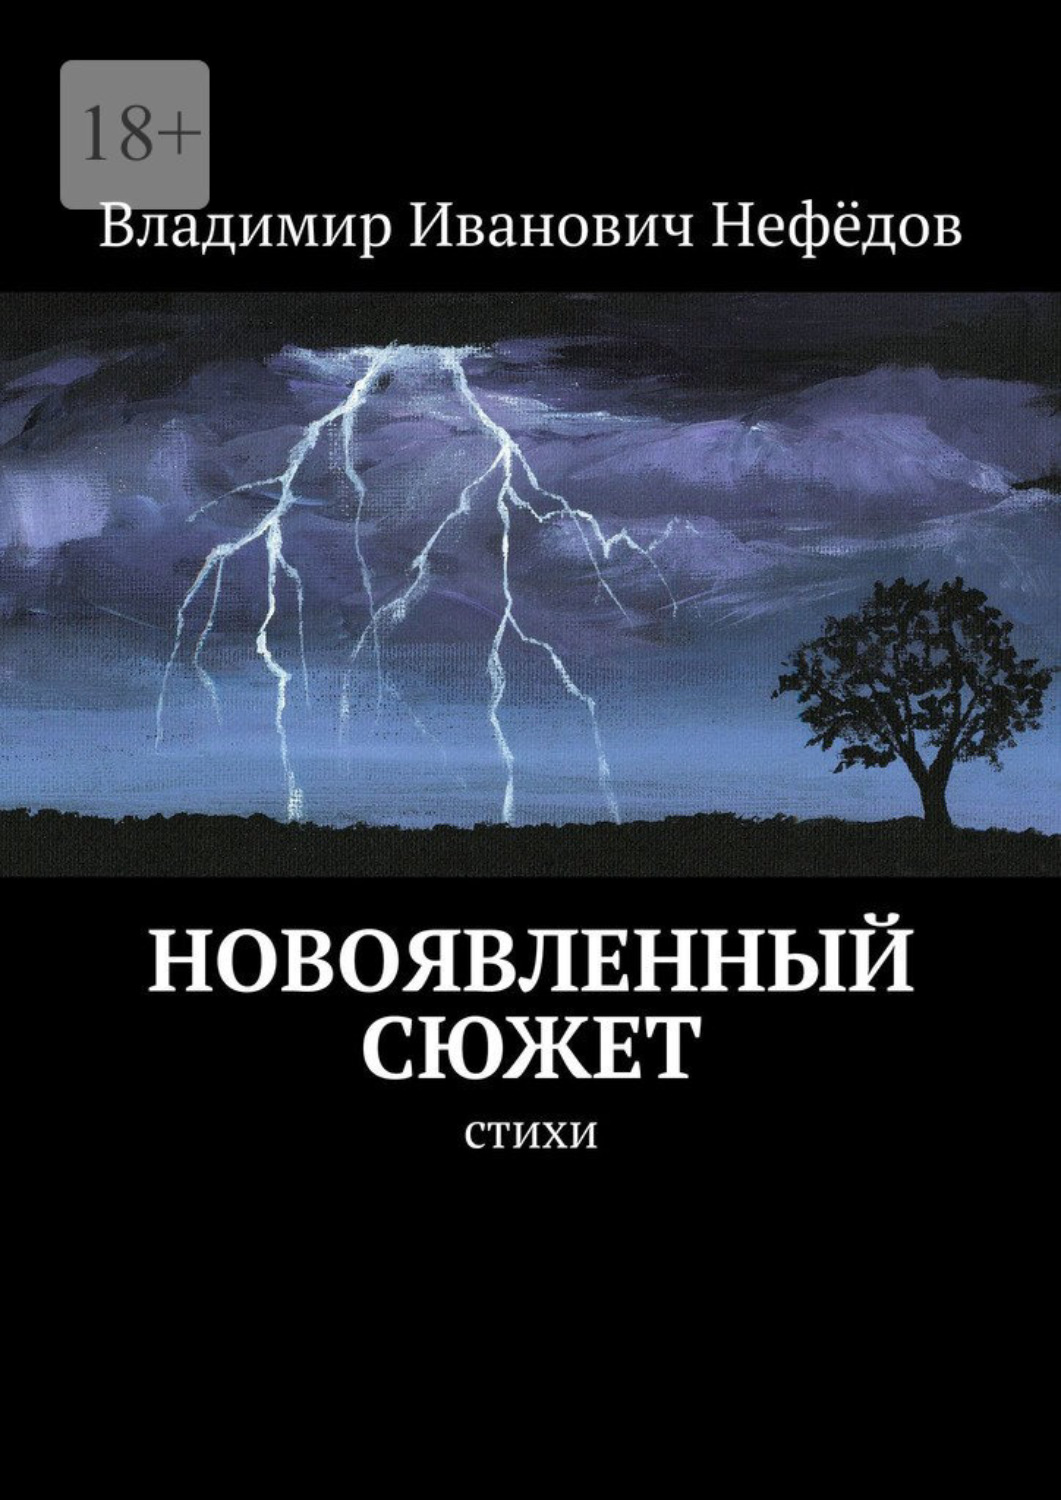 Владимир Иванович гавричев книга